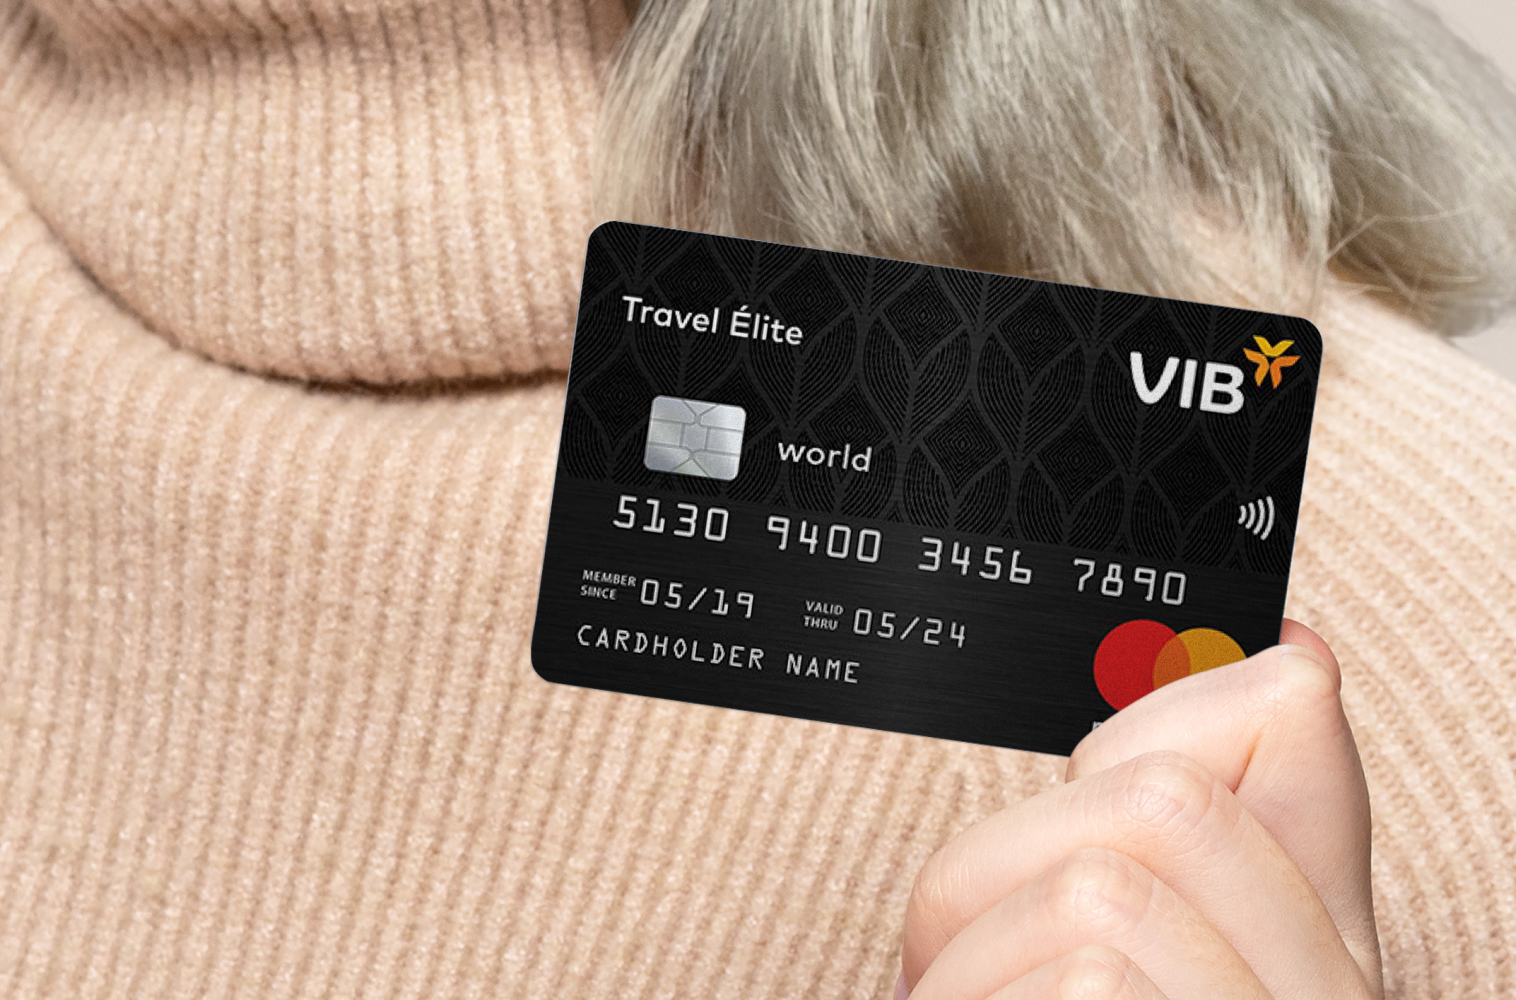 Travel Élite - một loại thẻ tín dụng quốc tế của VIB